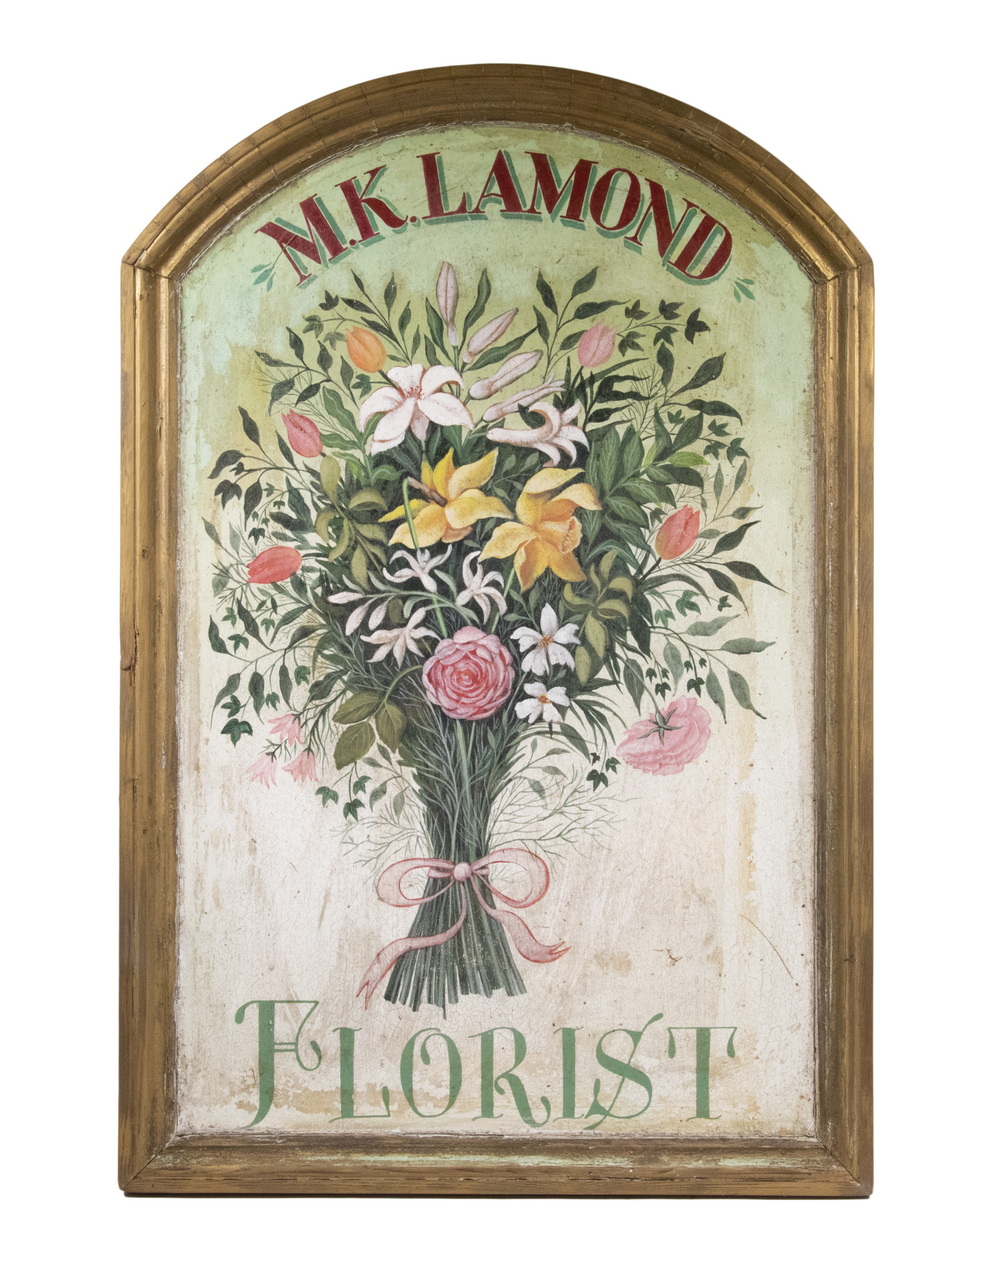 FLORIST SIGN "M.K. Lamond", arched